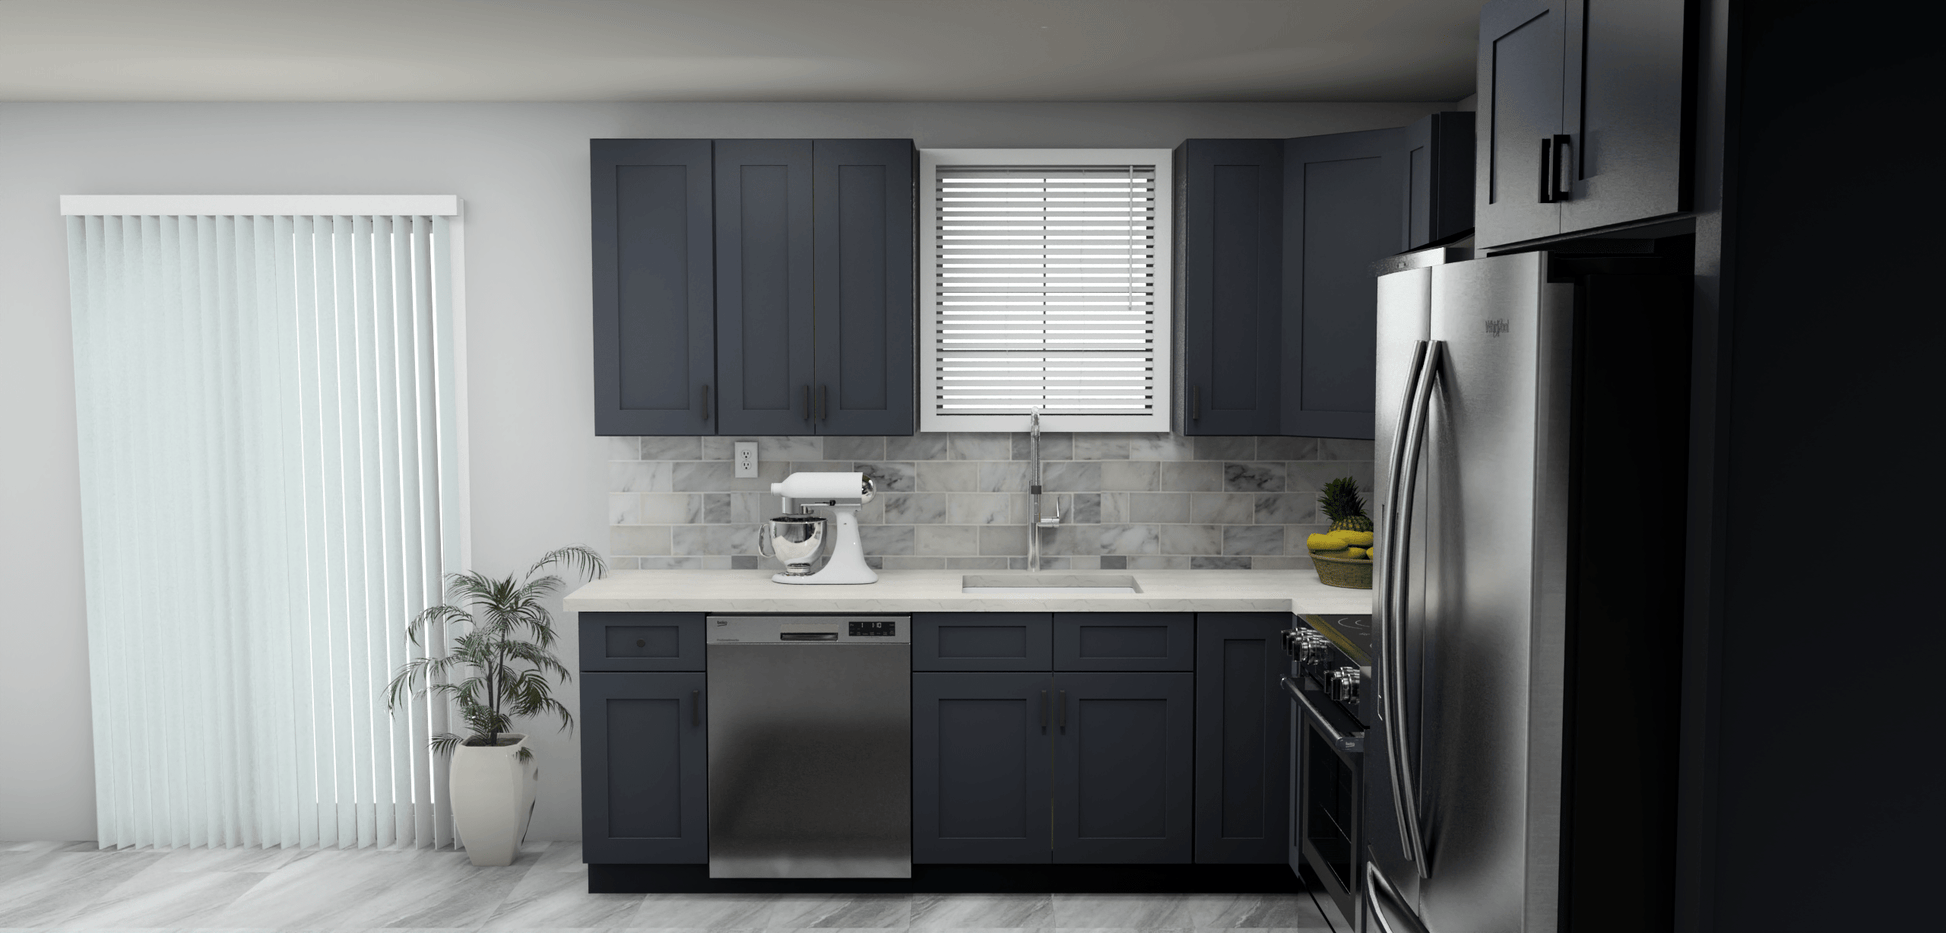 Fabuwood Allure Galaxy Indigo 9 x 11 L Shaped Kitchen Side Layout Photo